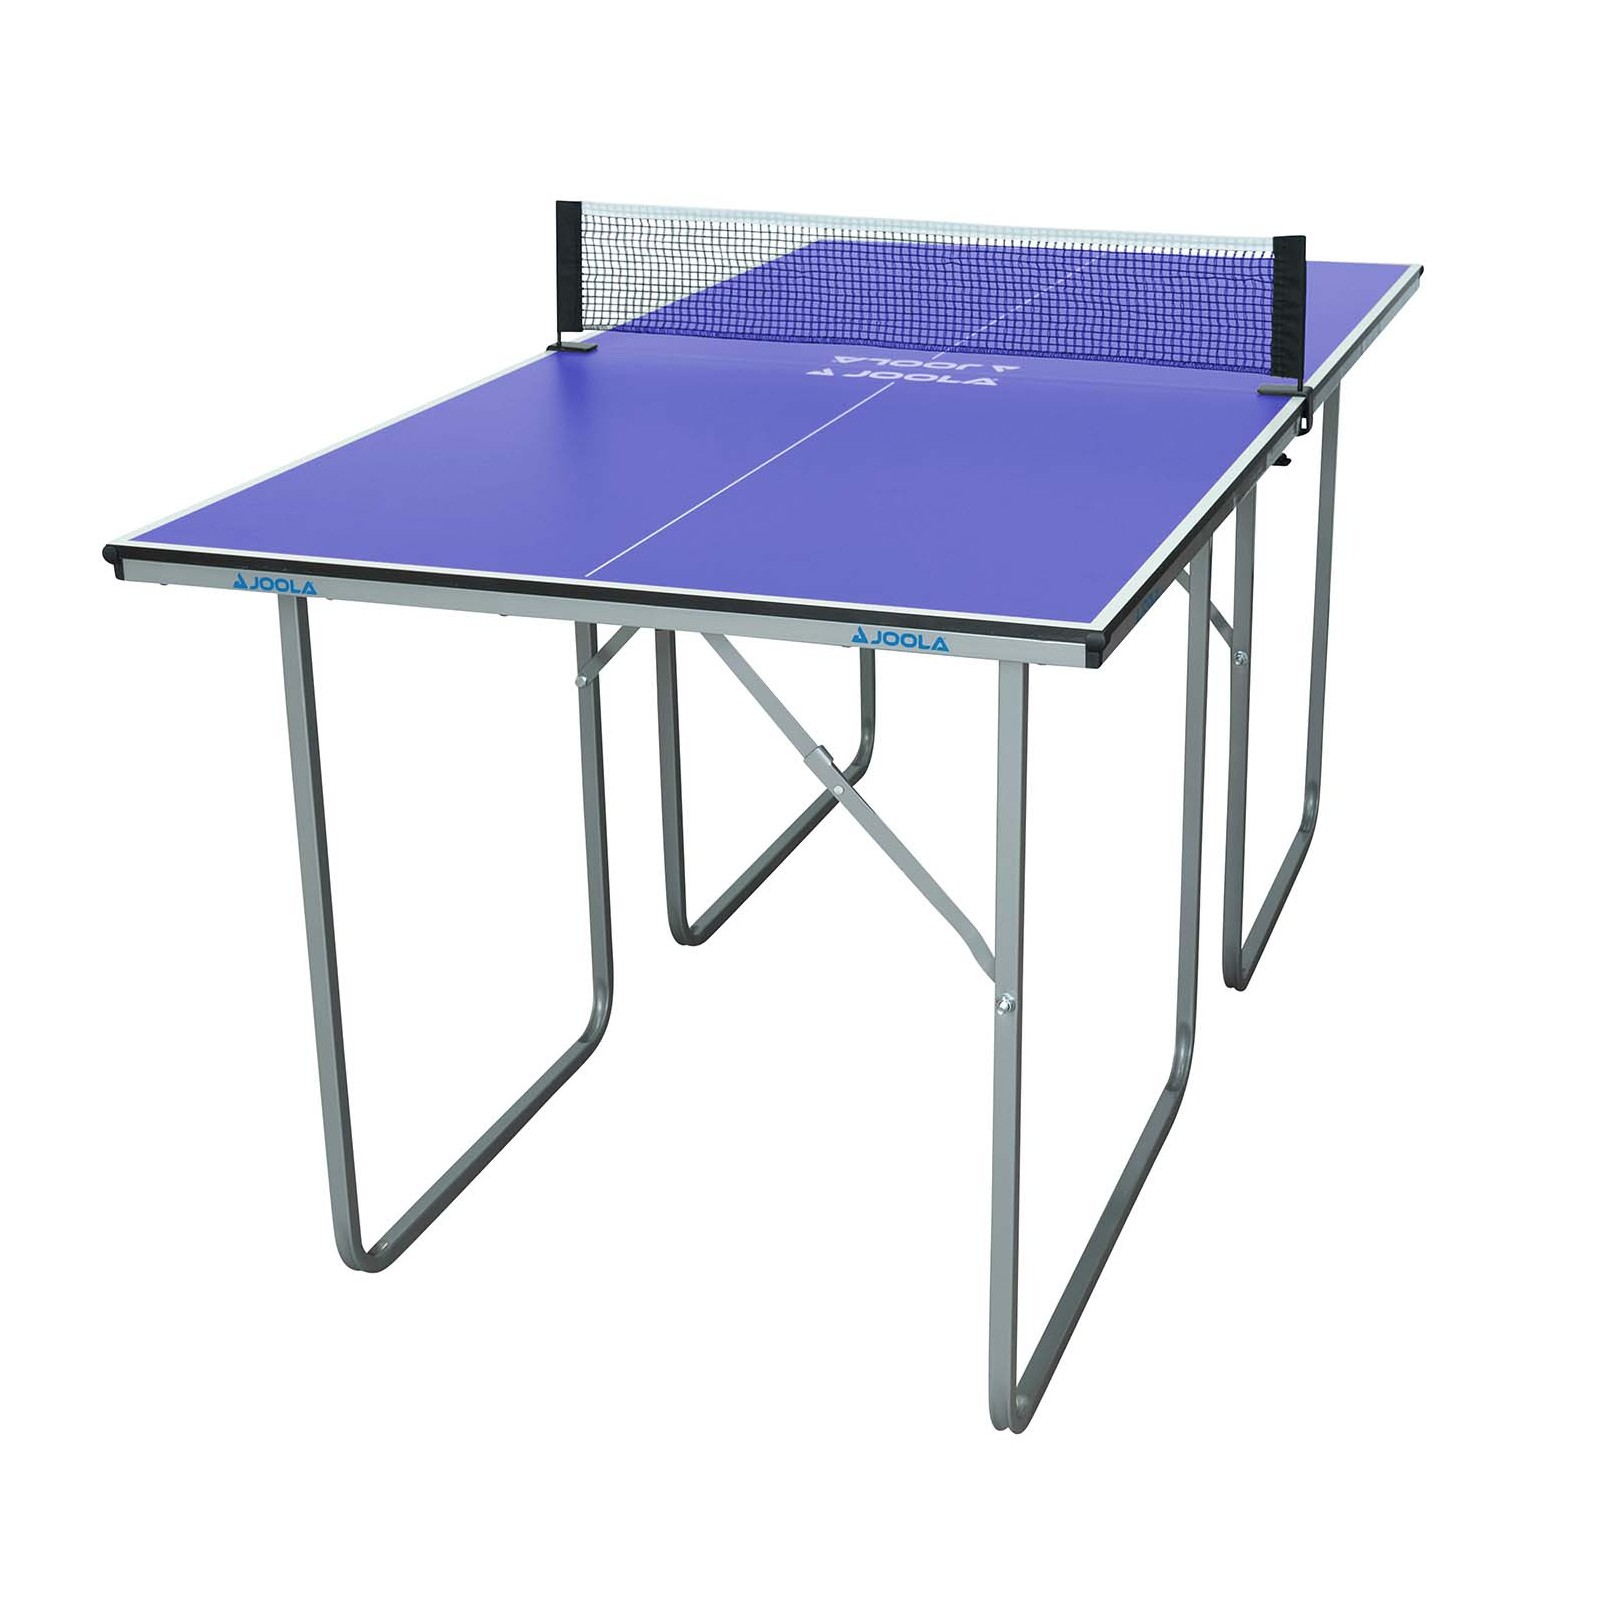 Tennis - Mid Fitshop Table Size Table Joola